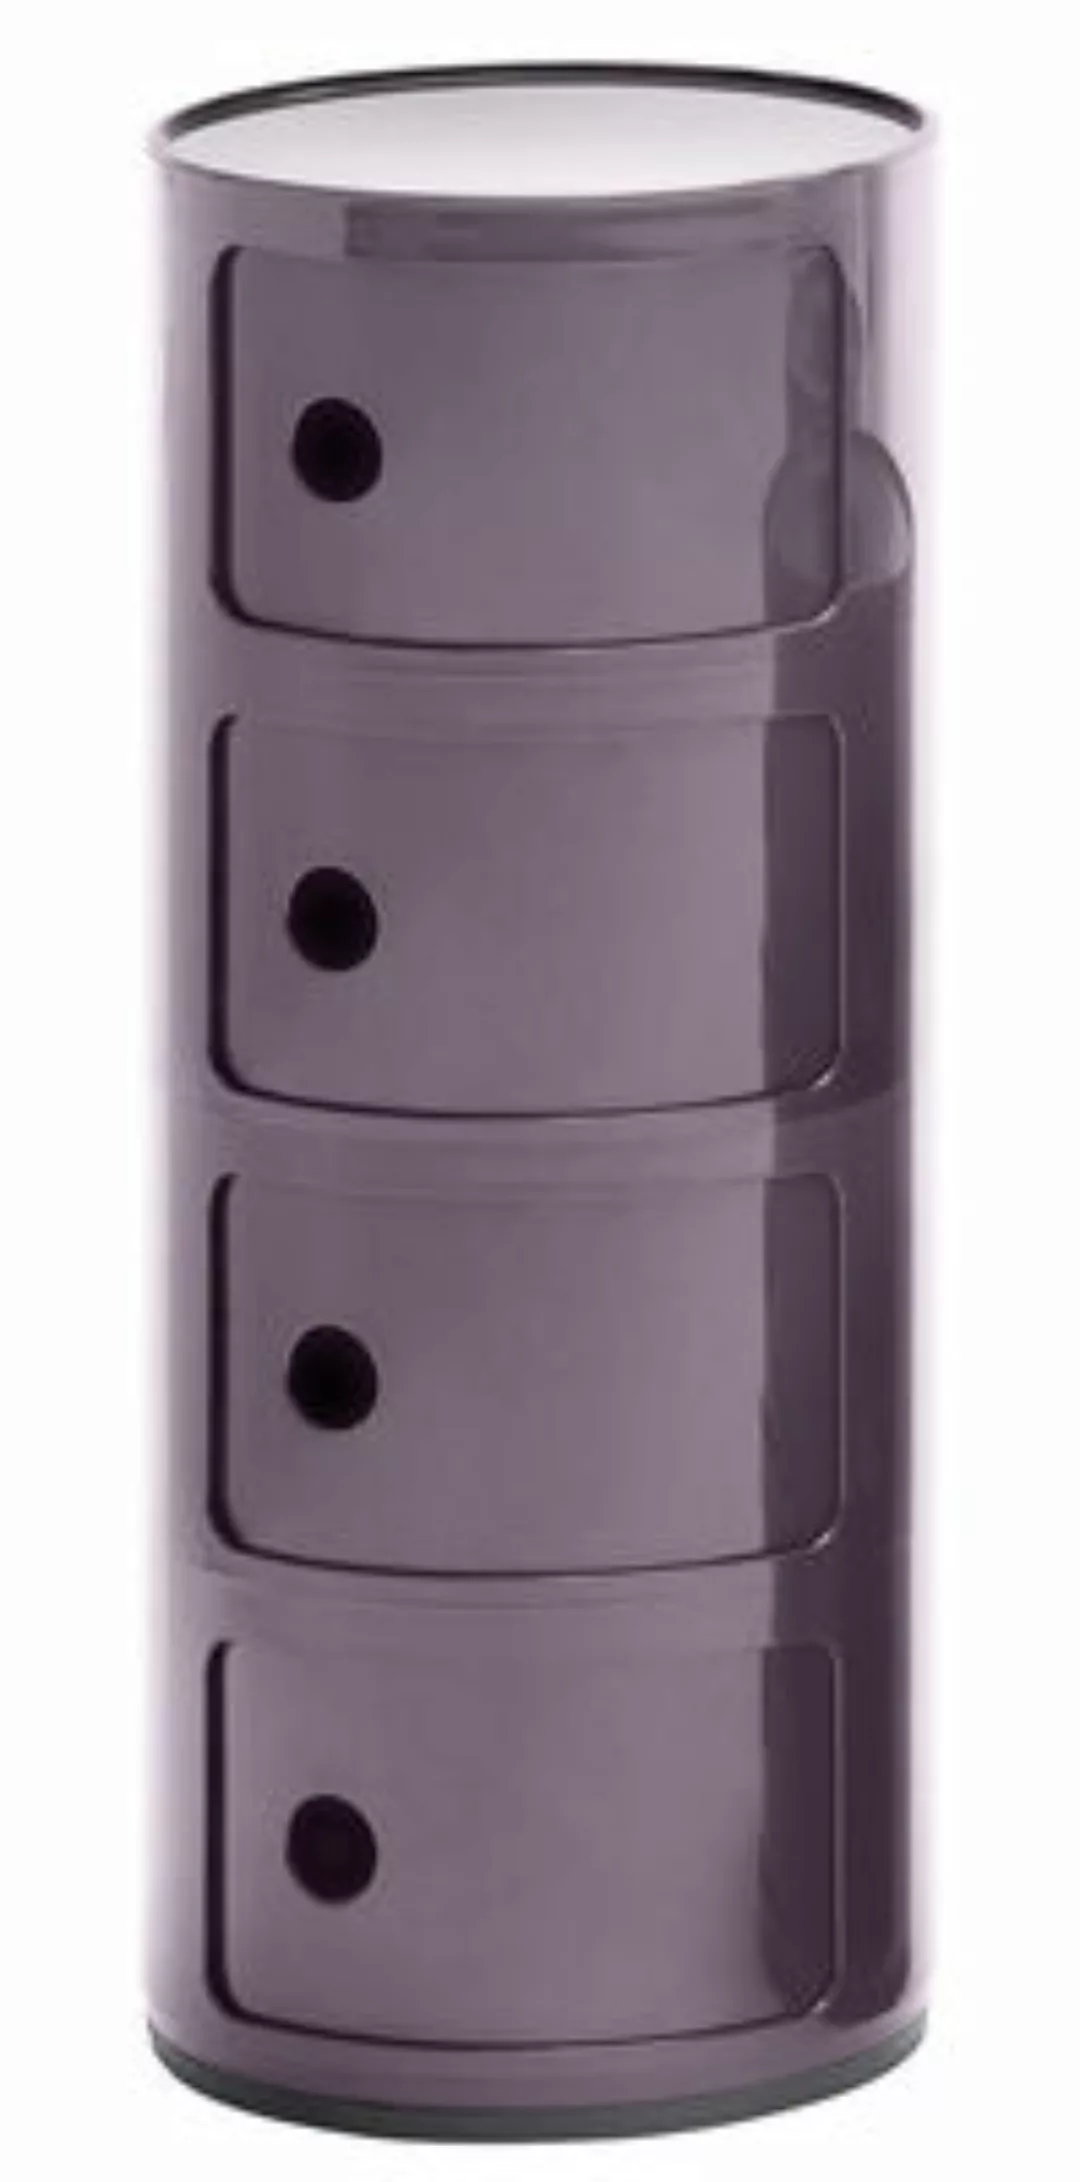 Ablage Componibili plastikmaterial violett / 4 Fächer - H 77 cm - Kartell - günstig online kaufen